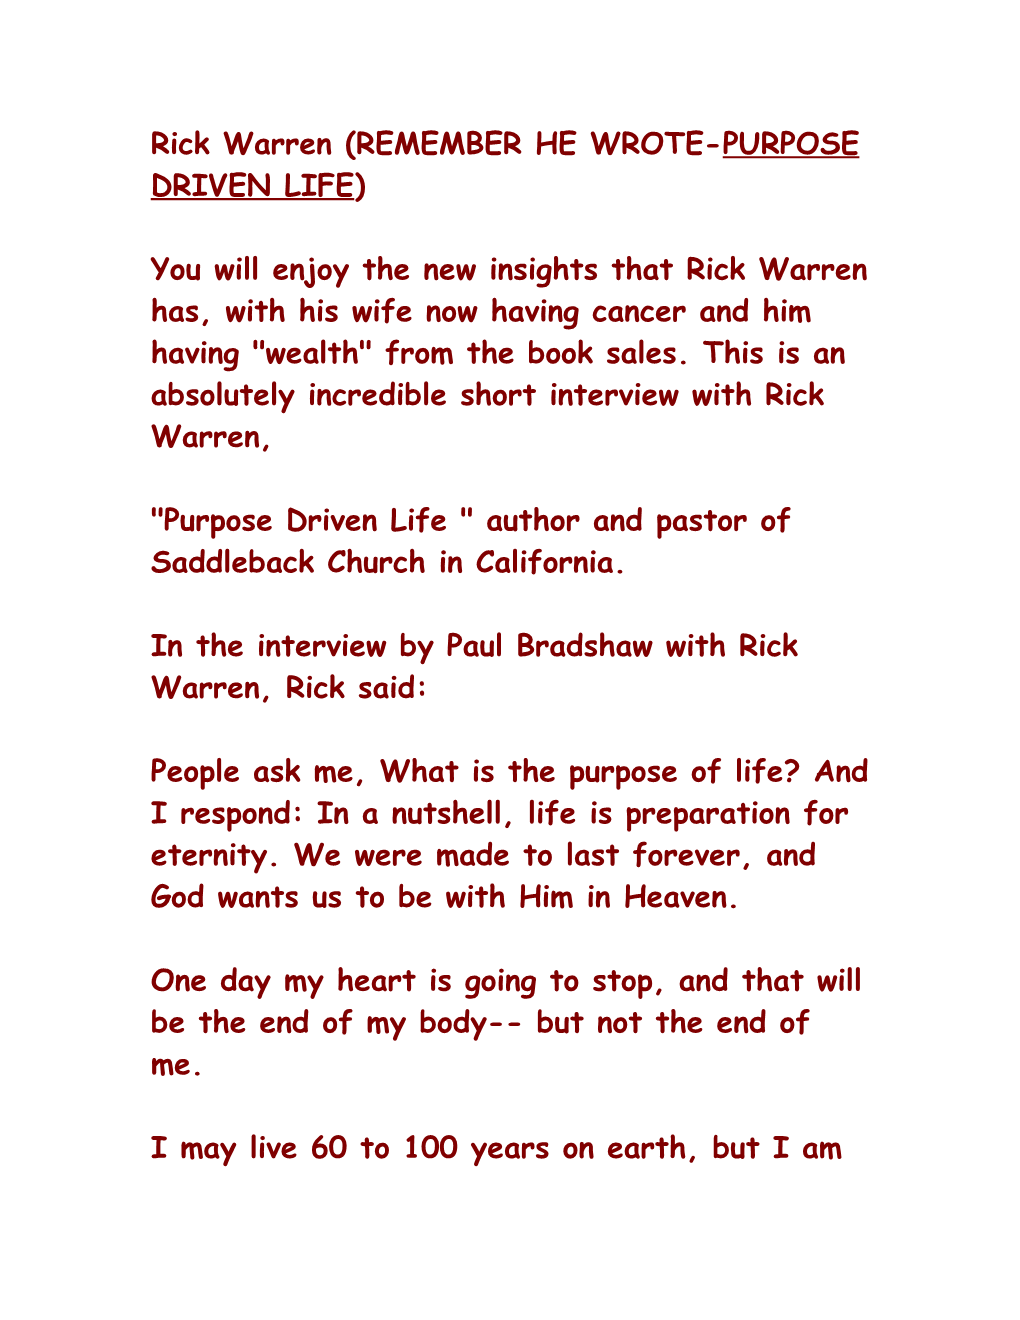 Rick Warren (REMEMBER HE WROTE-PURPOSE DRIVEN LIFE)